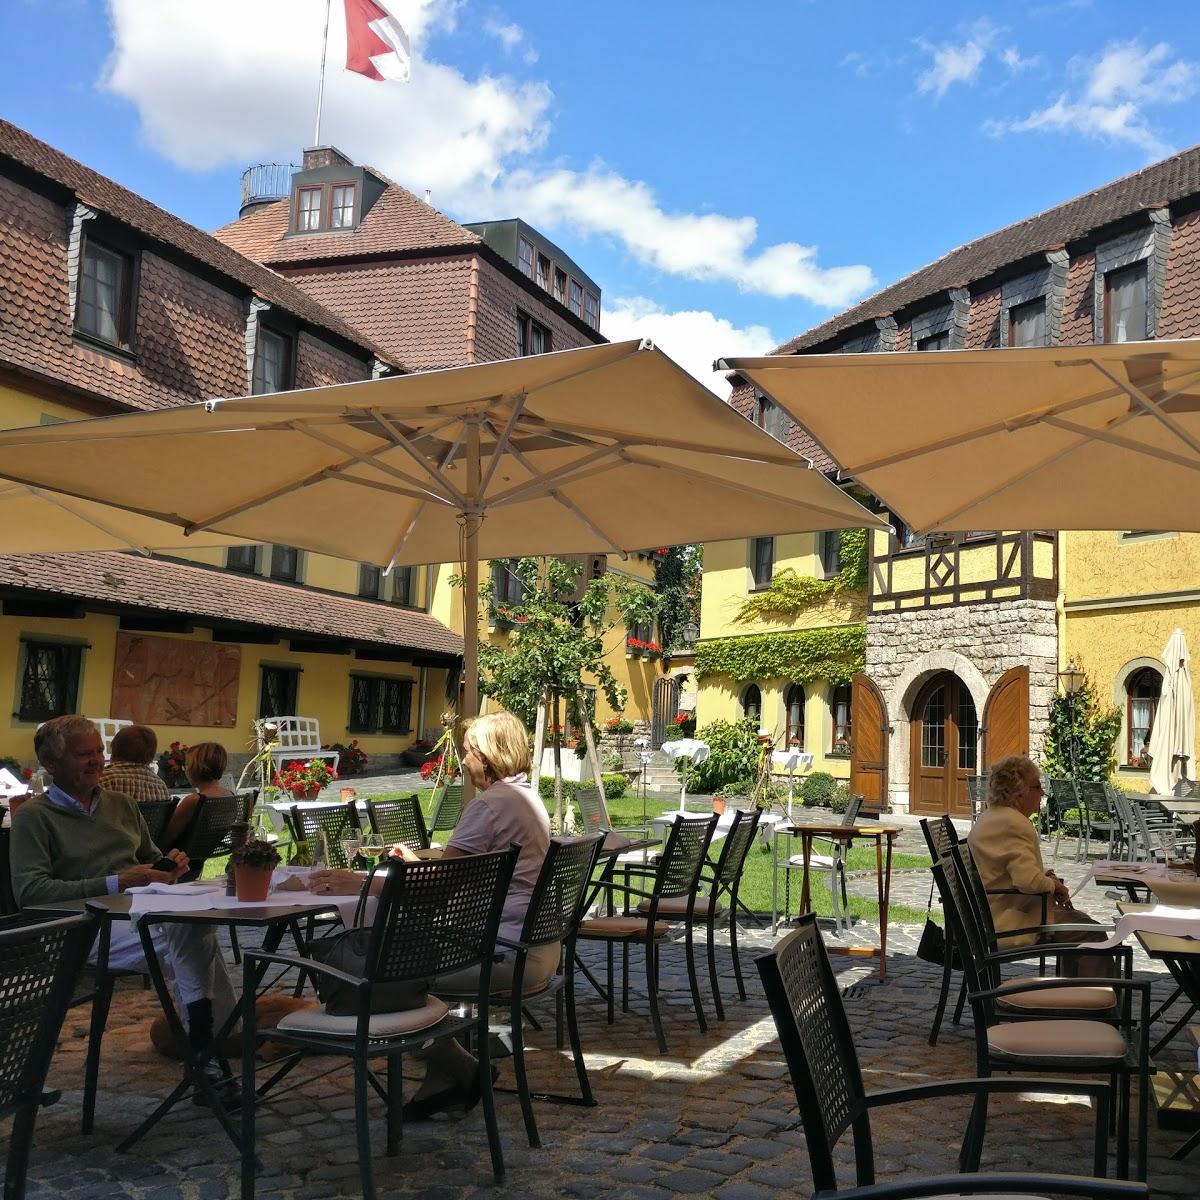 Restaurant "Schützenhaus" in  Rottendorf